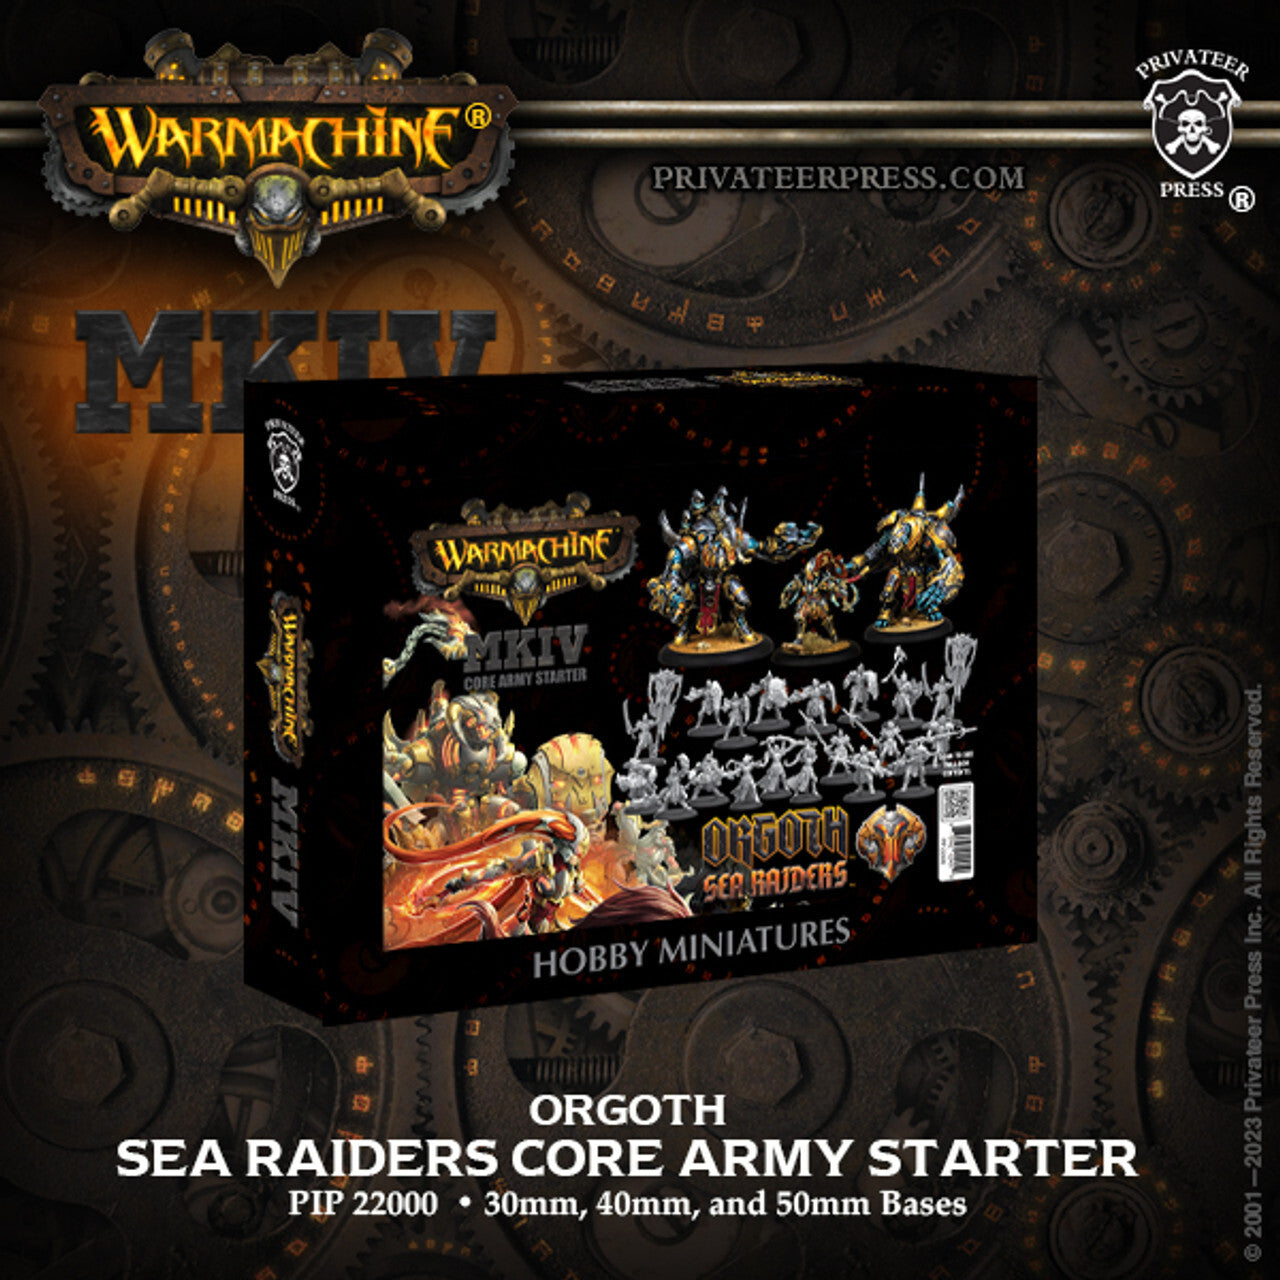 Orgoth Sea Raiders Core Army Starter (April restock)